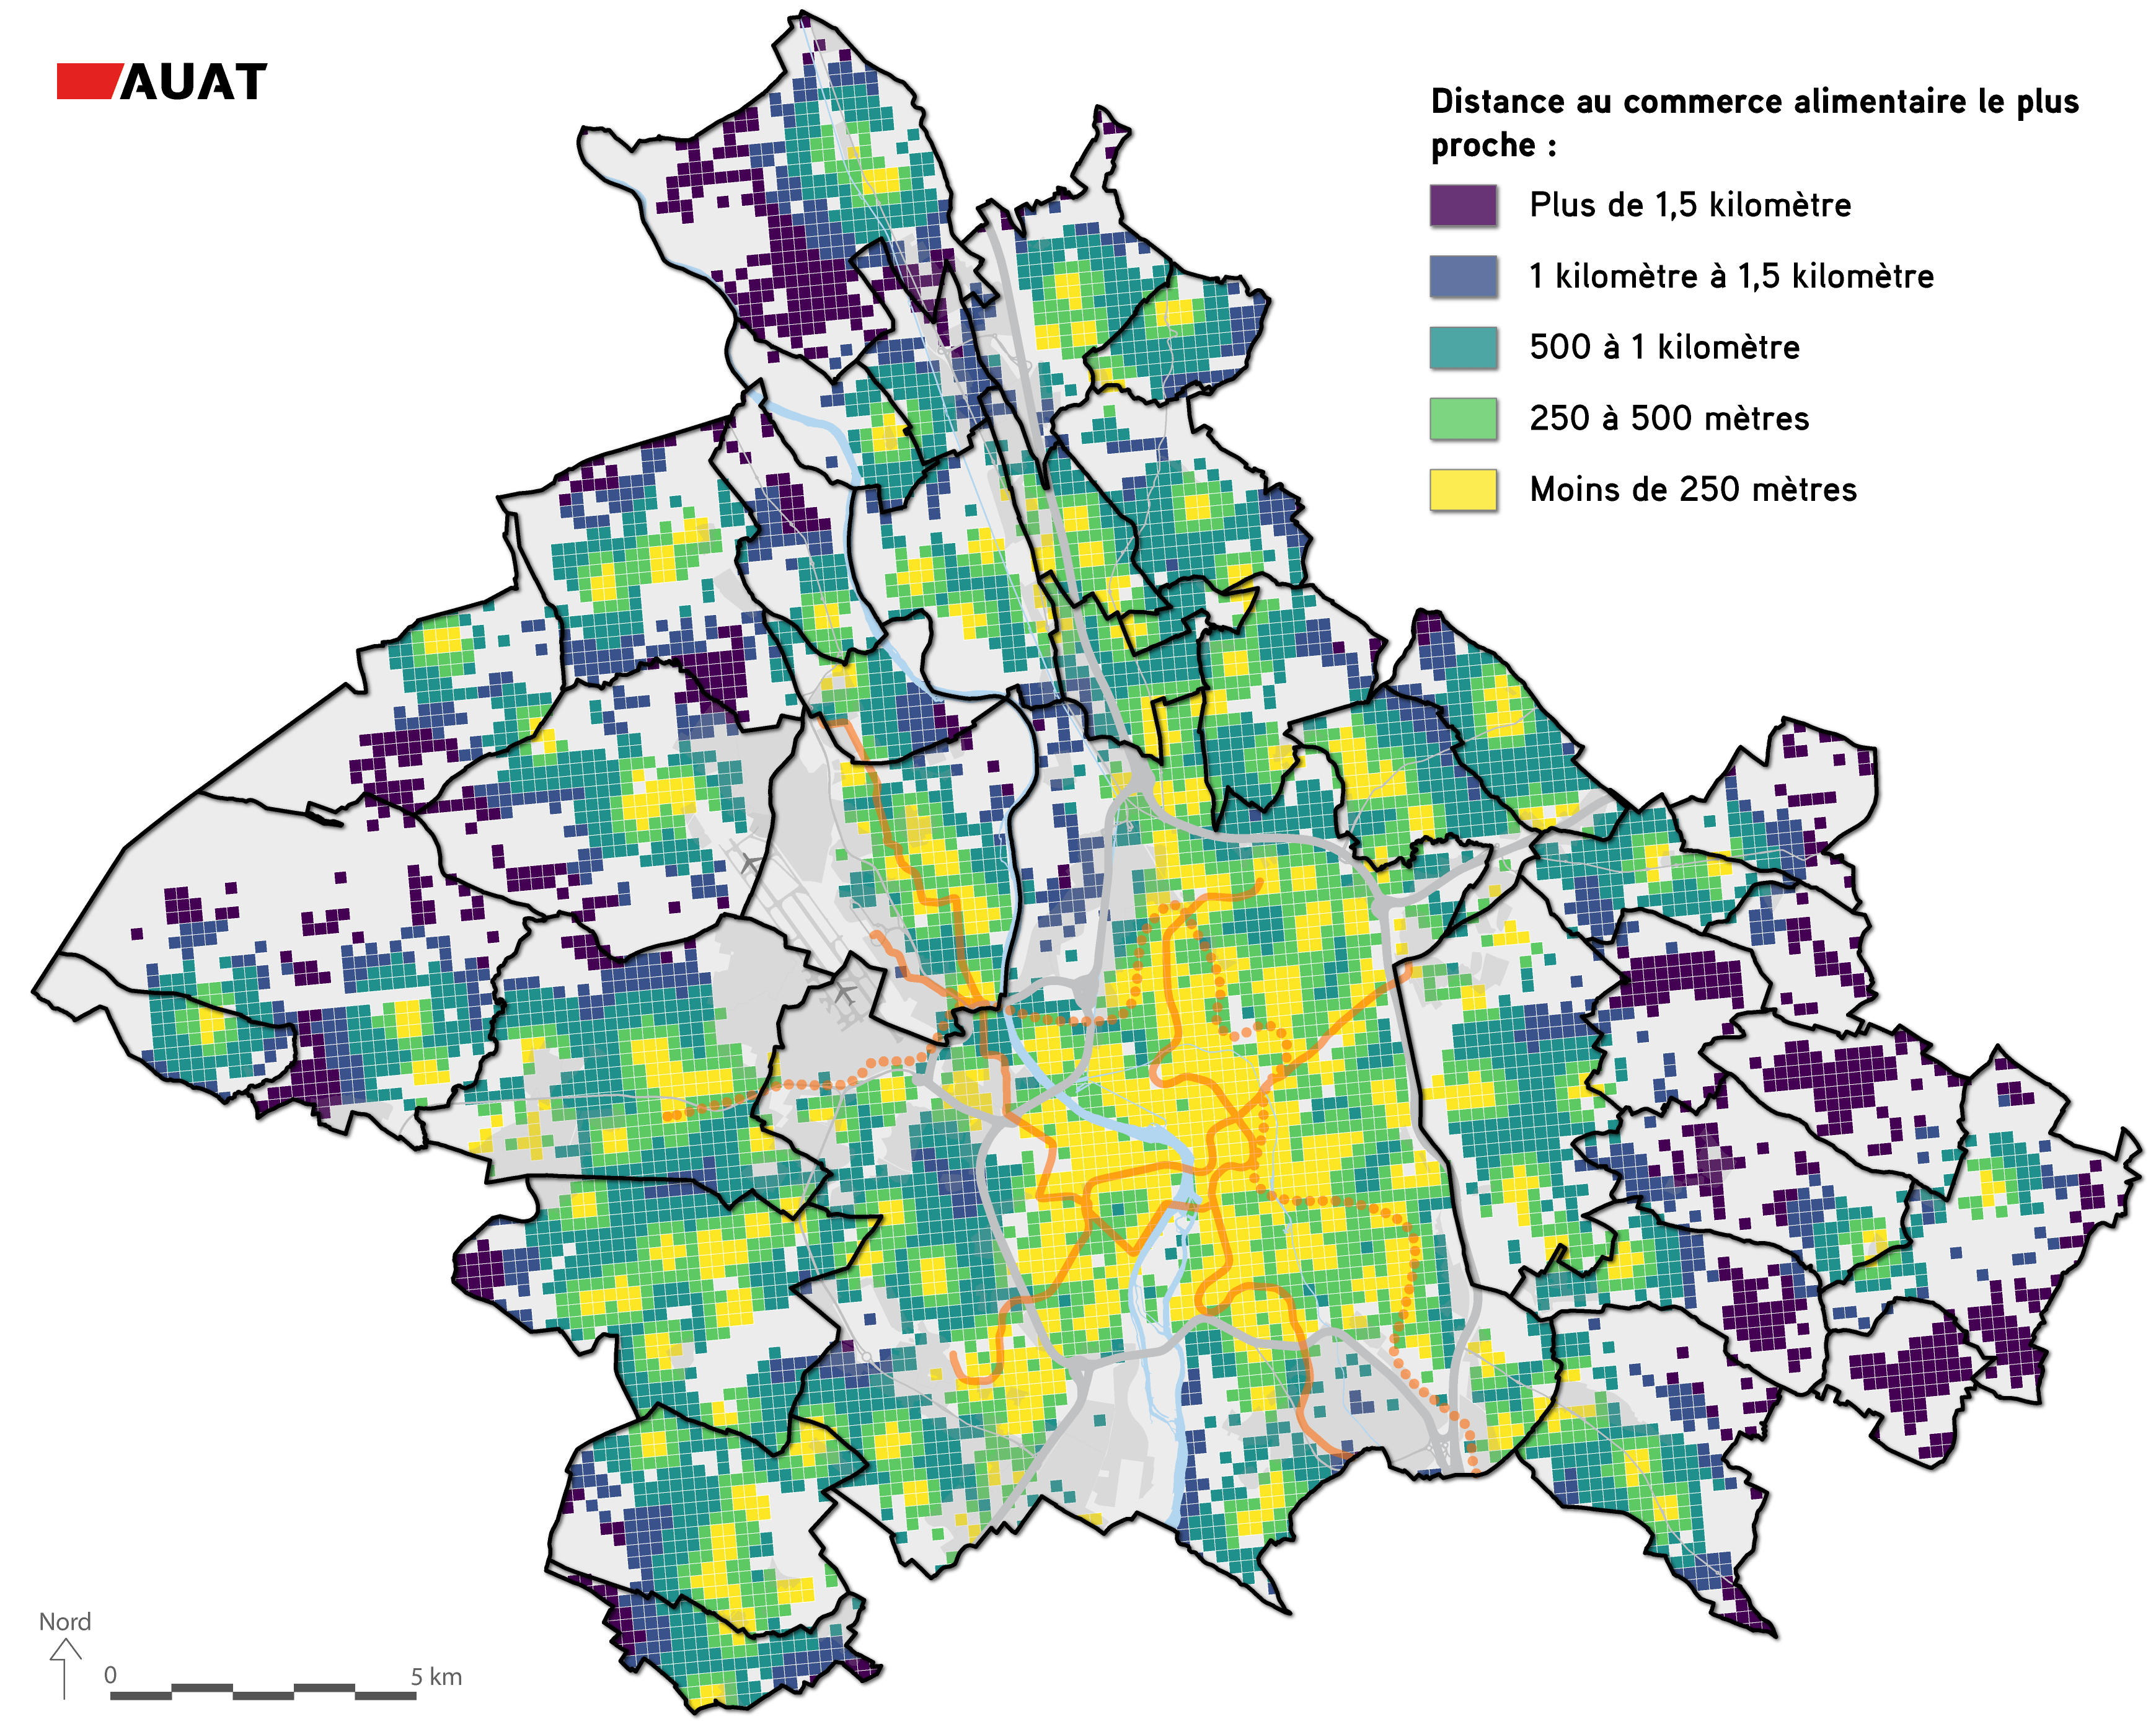 Représentation des distances qui séparent les habitants du commerce de proximité le plus proche, dans la métropole toulousaine - Carte AUAT 2021